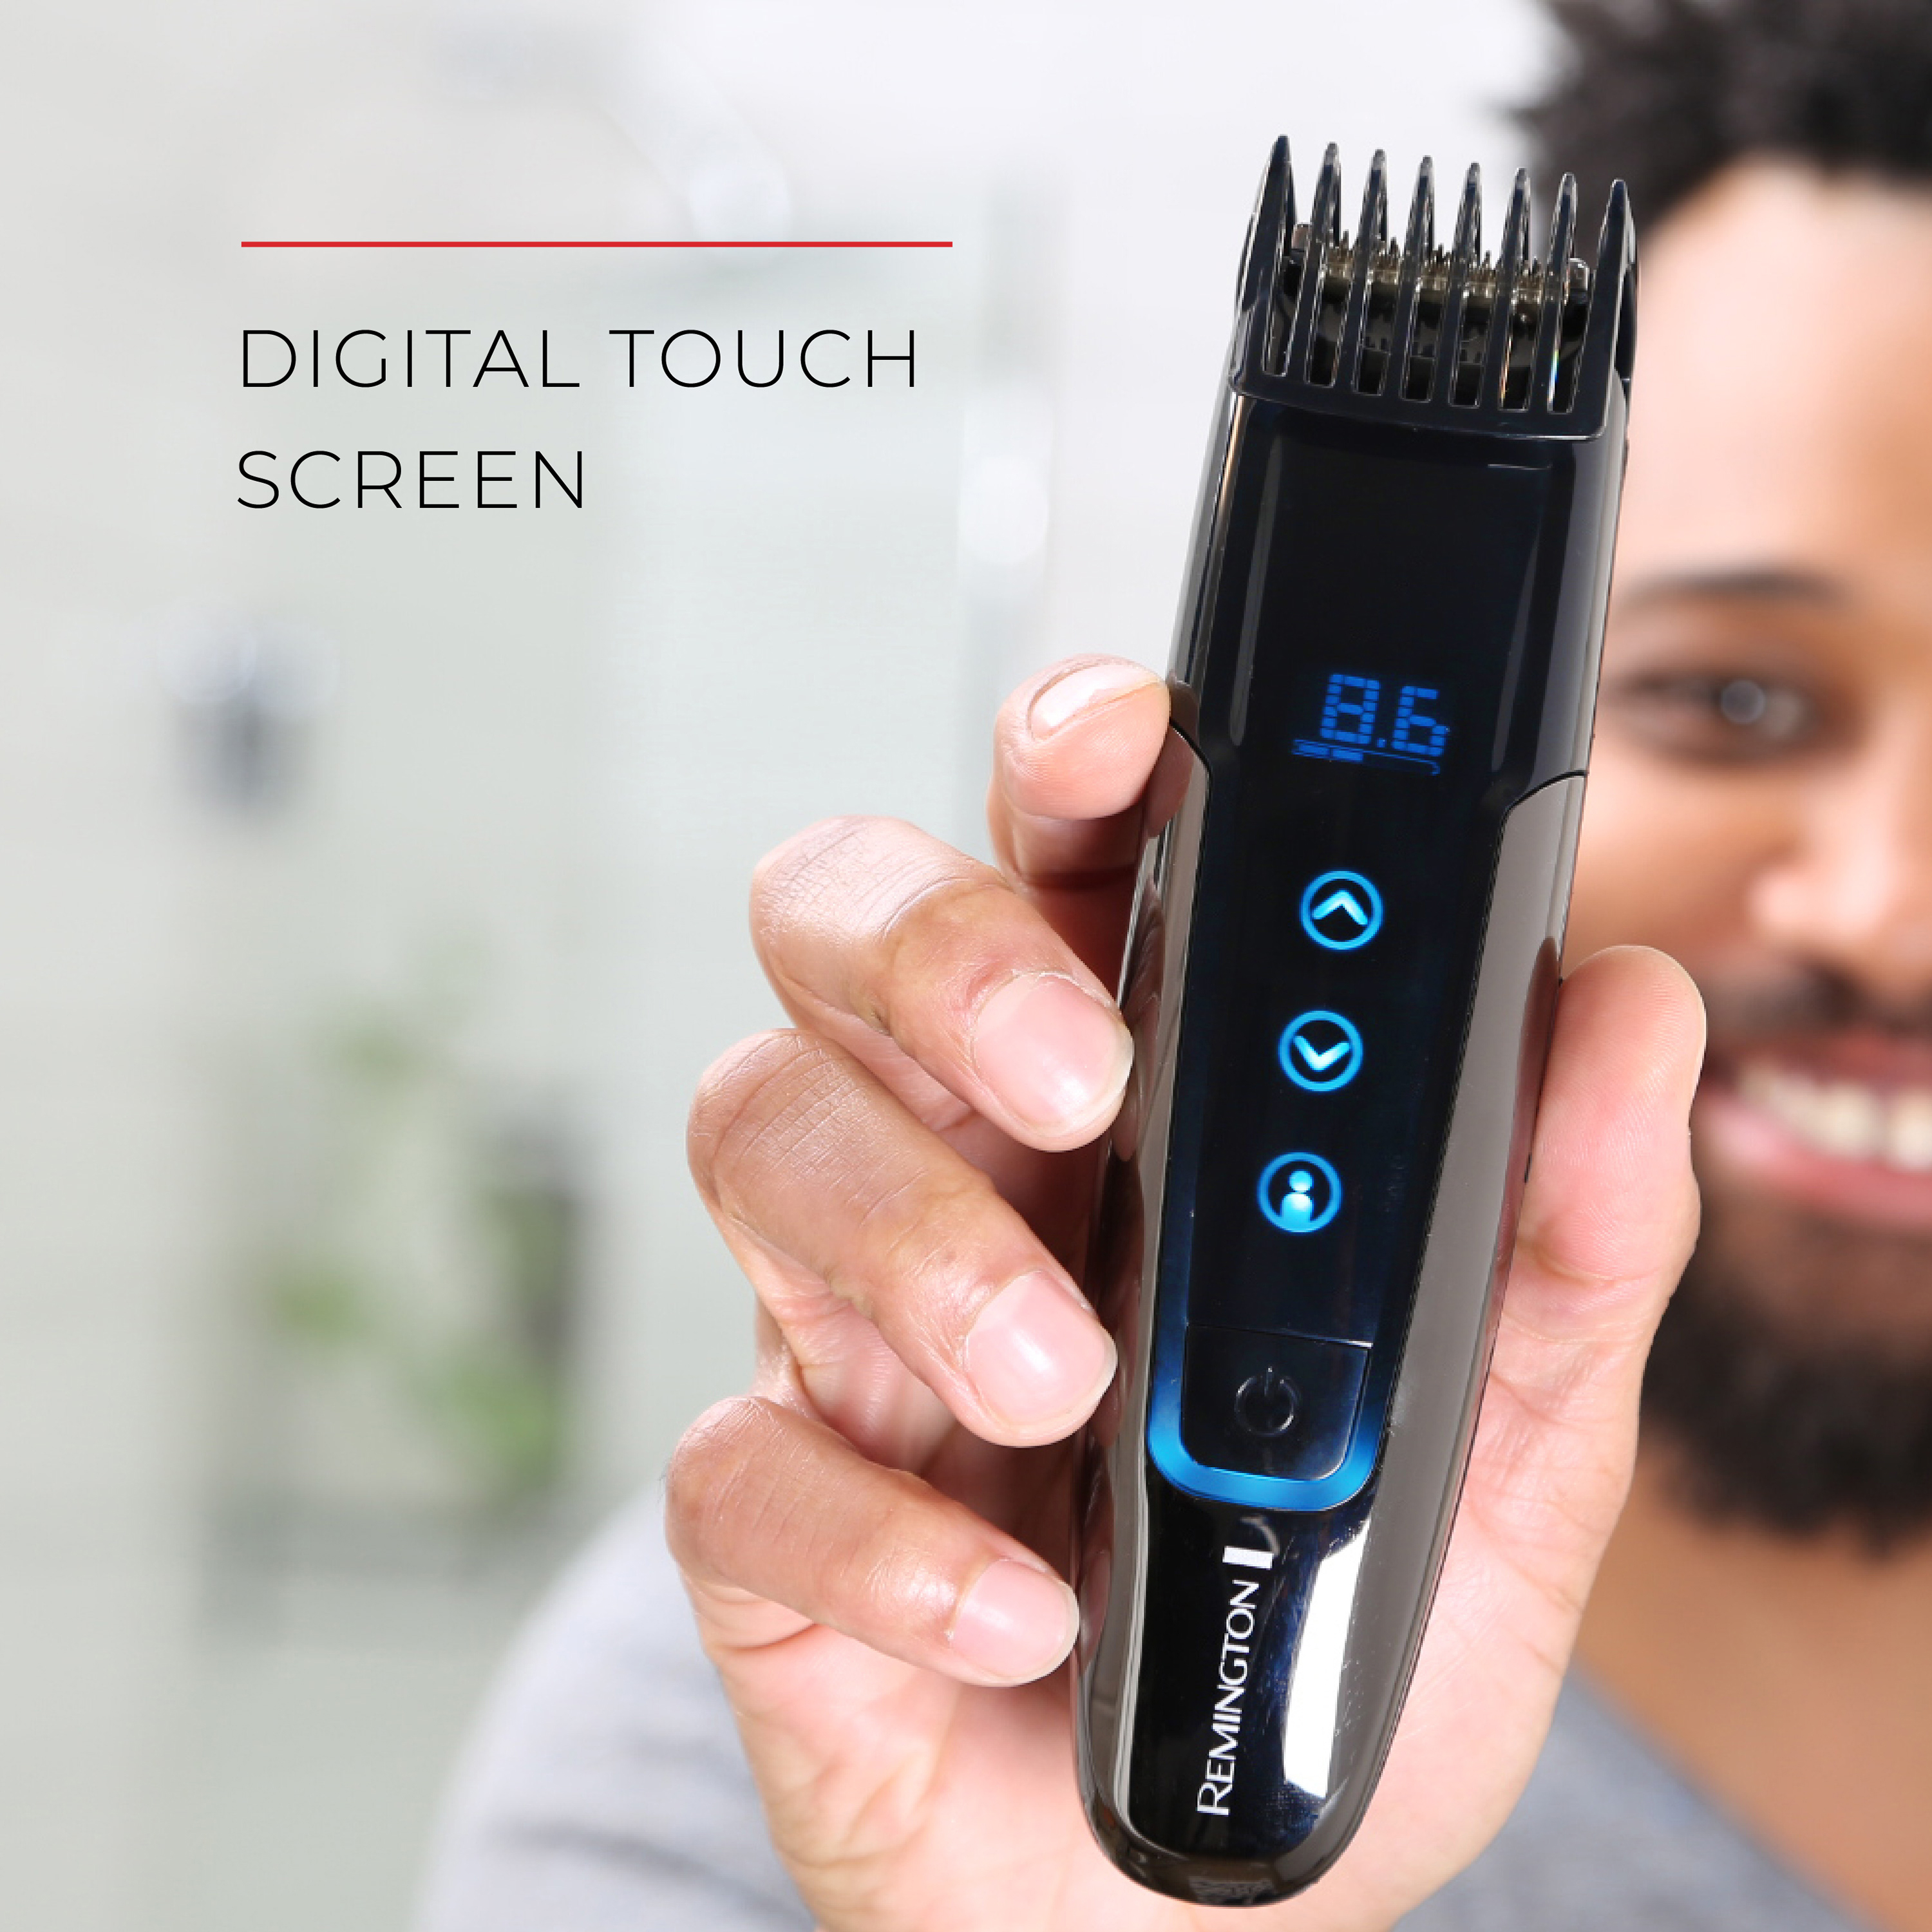 mb4700 touchtech beard trimmer